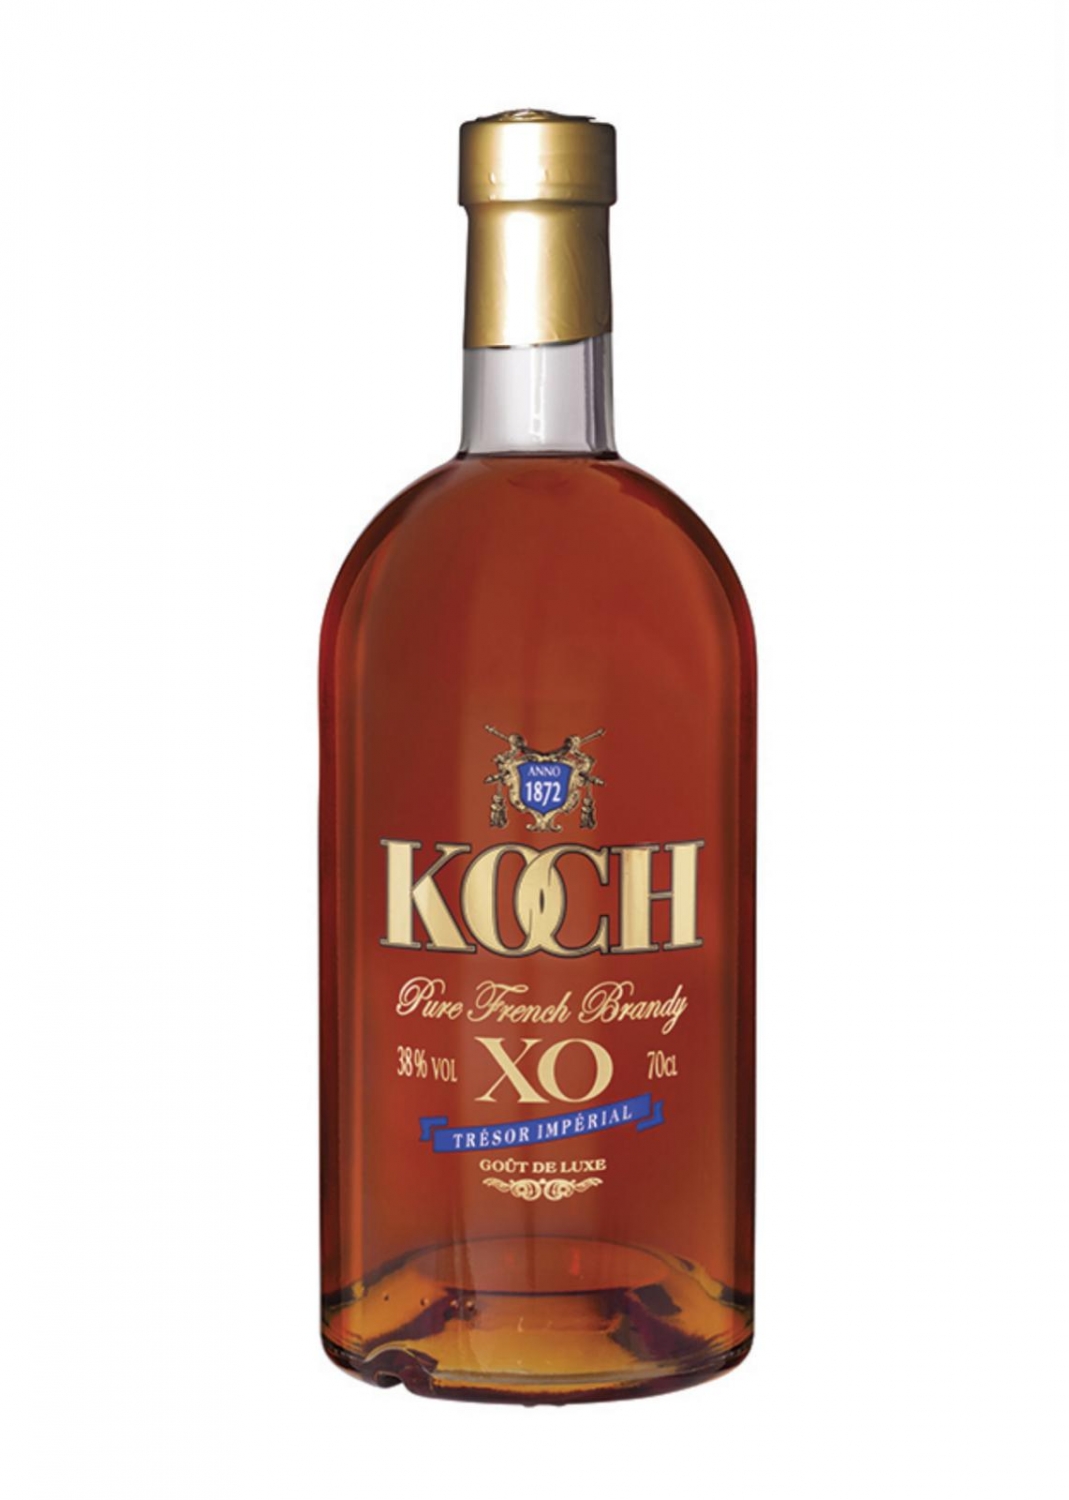 Koch Brandy XO 38% 70cl